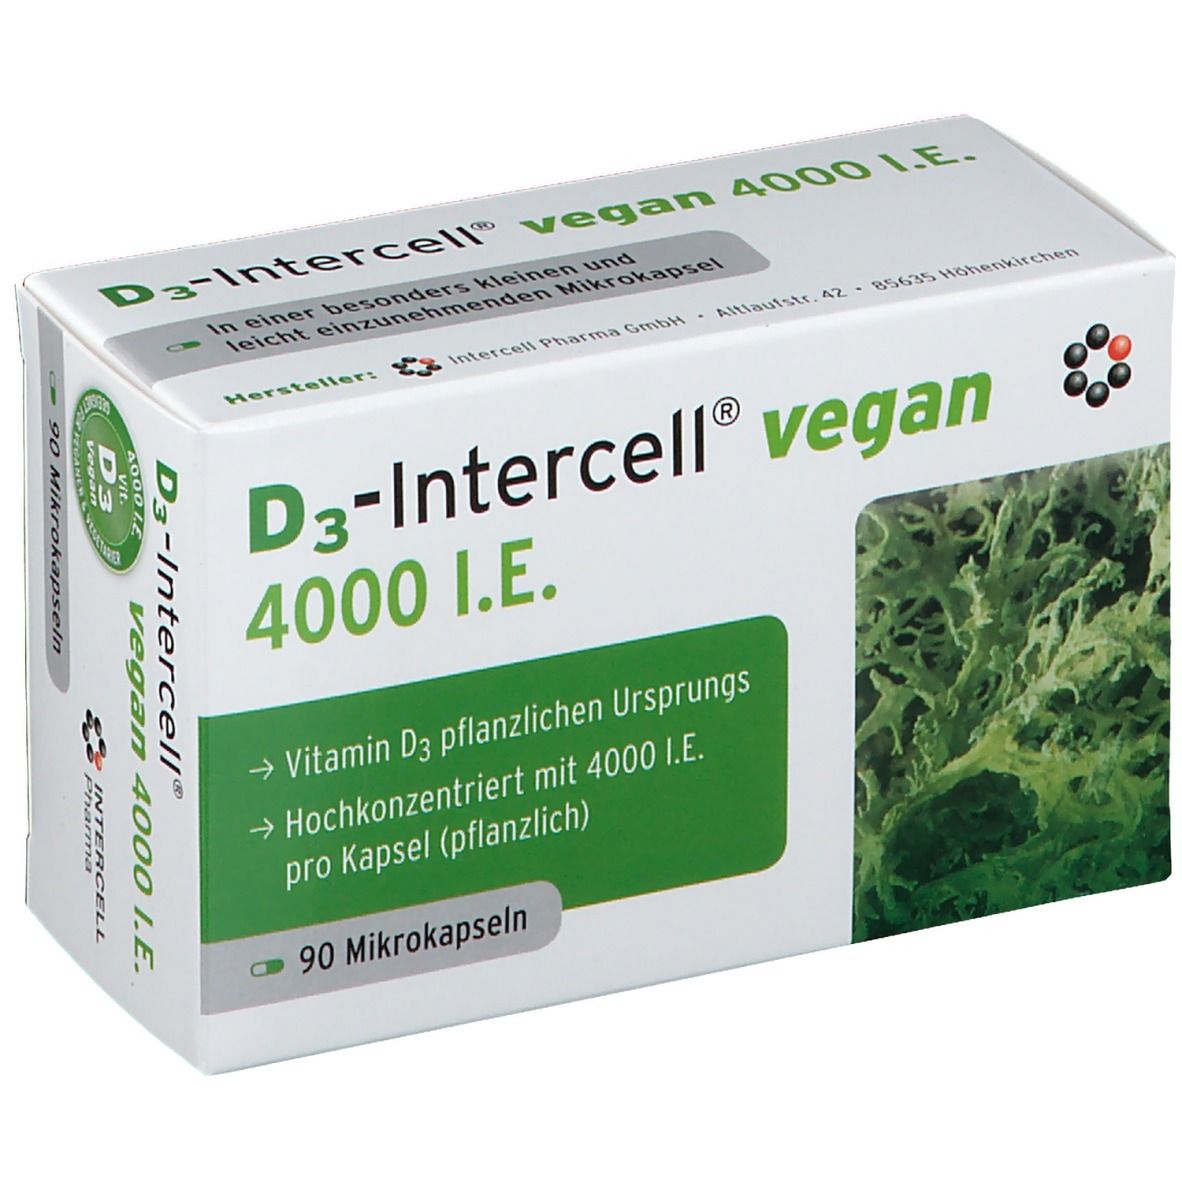 D3-Intercell Vegan 4000 I.E.